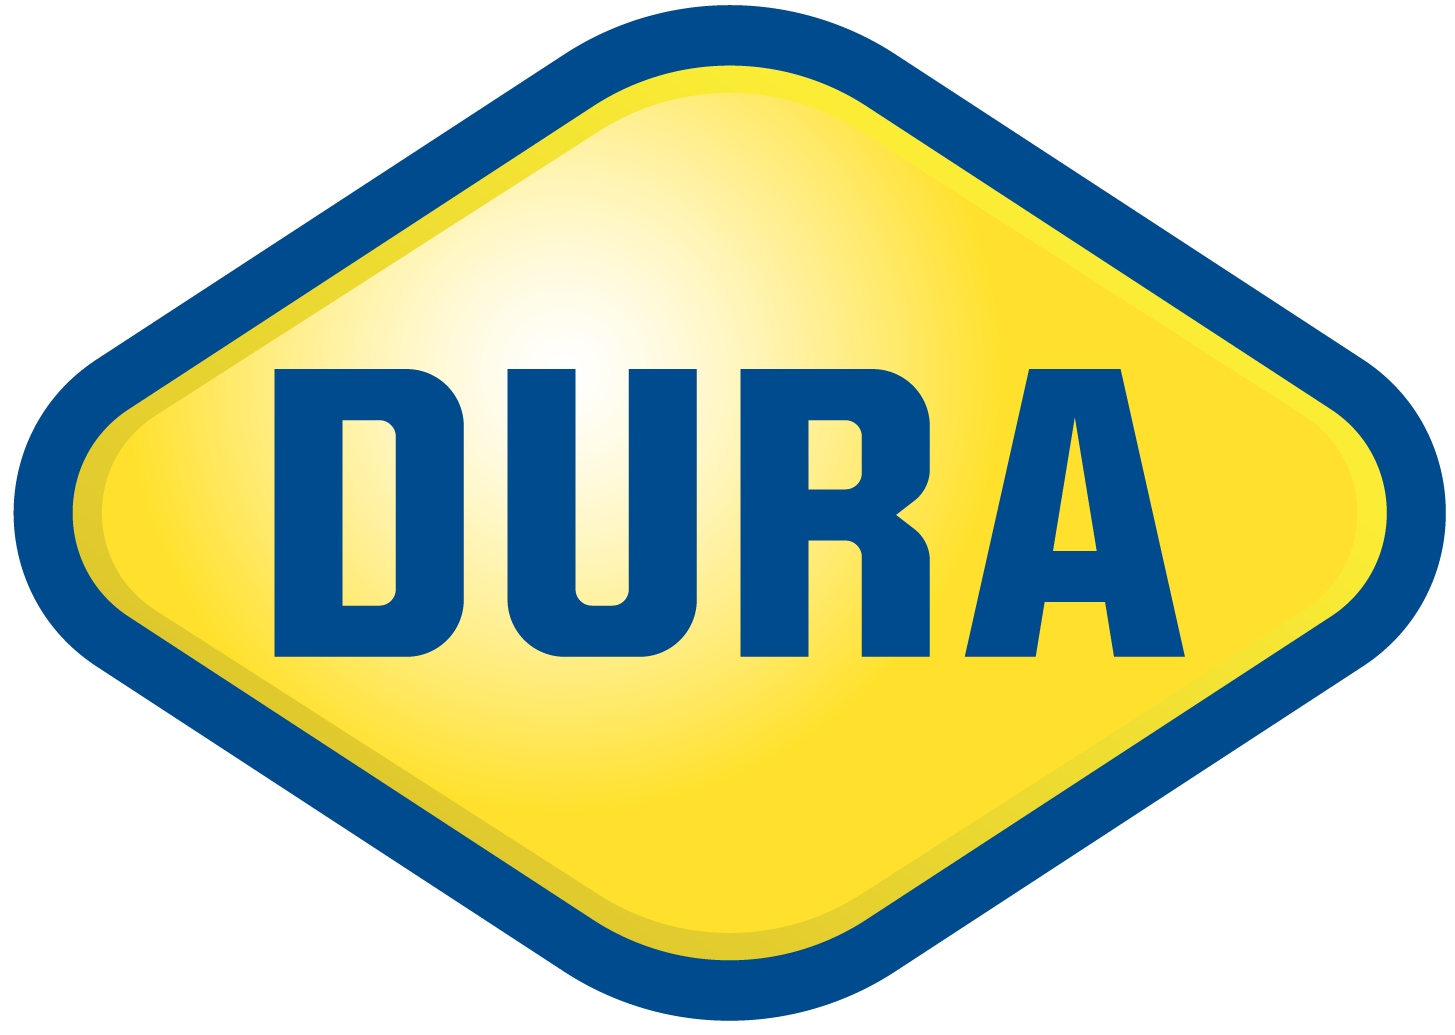 Dura Logo